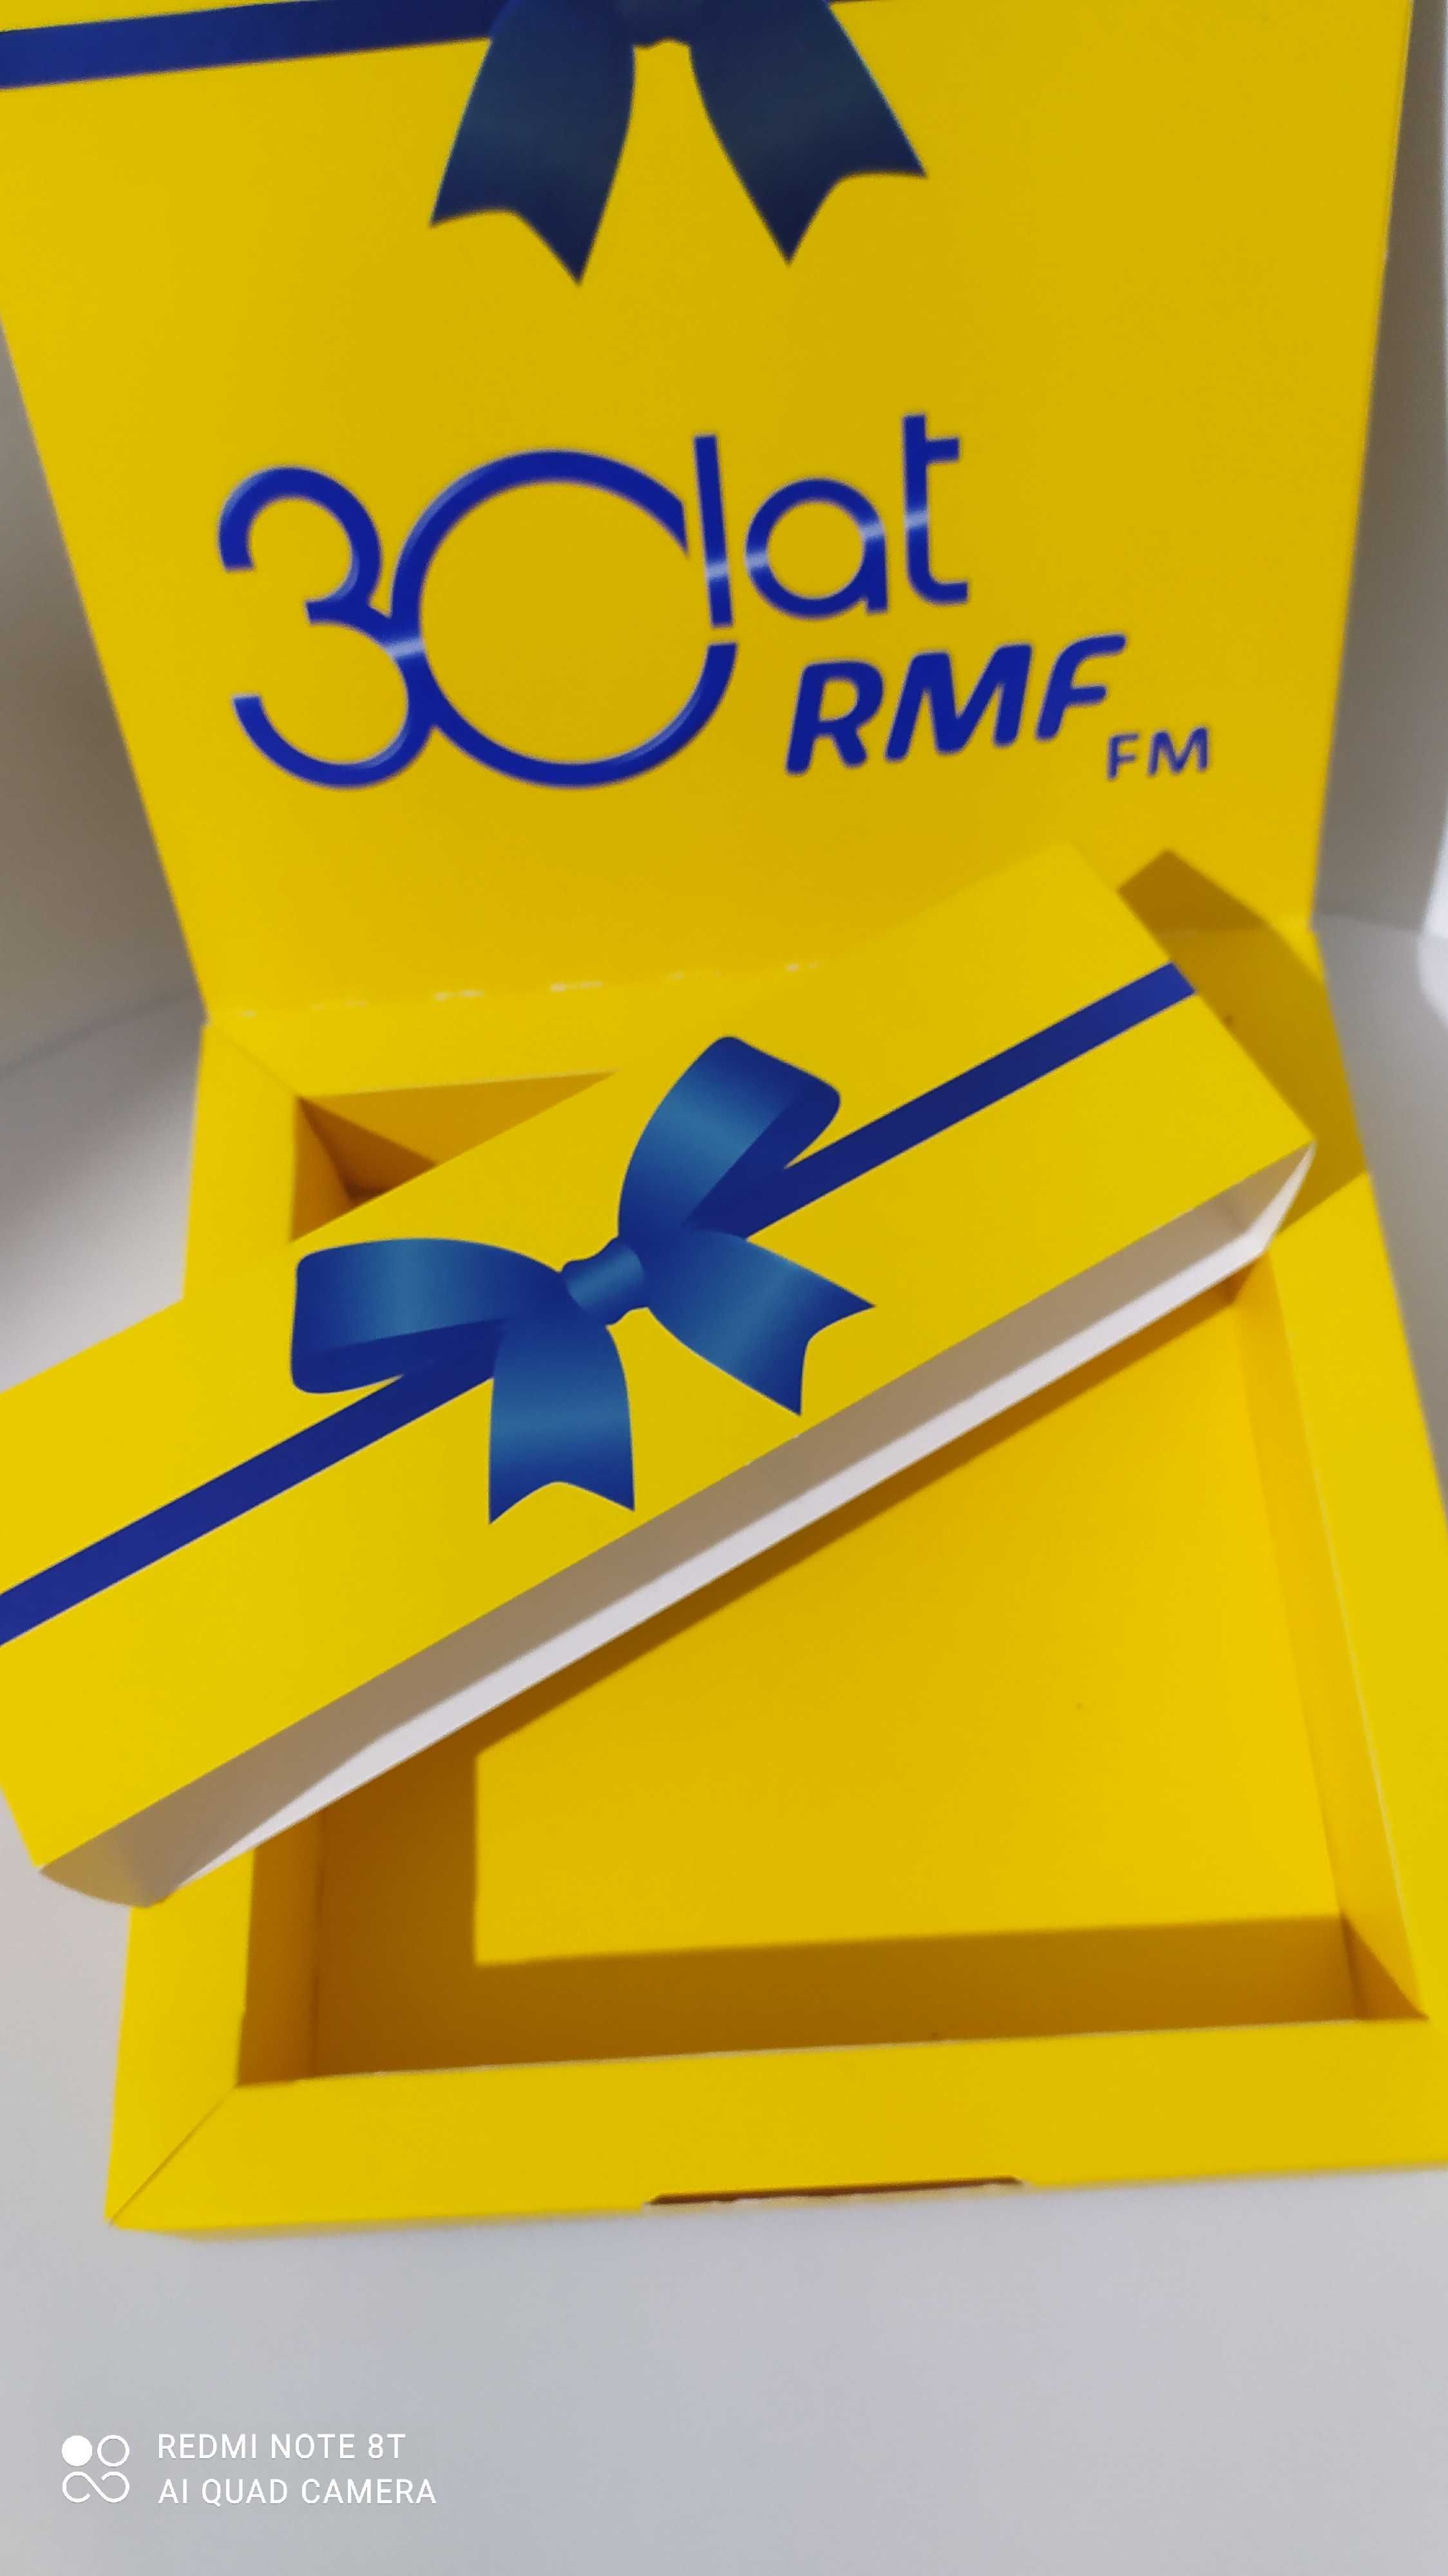 Pudełko RMF fm 30lat